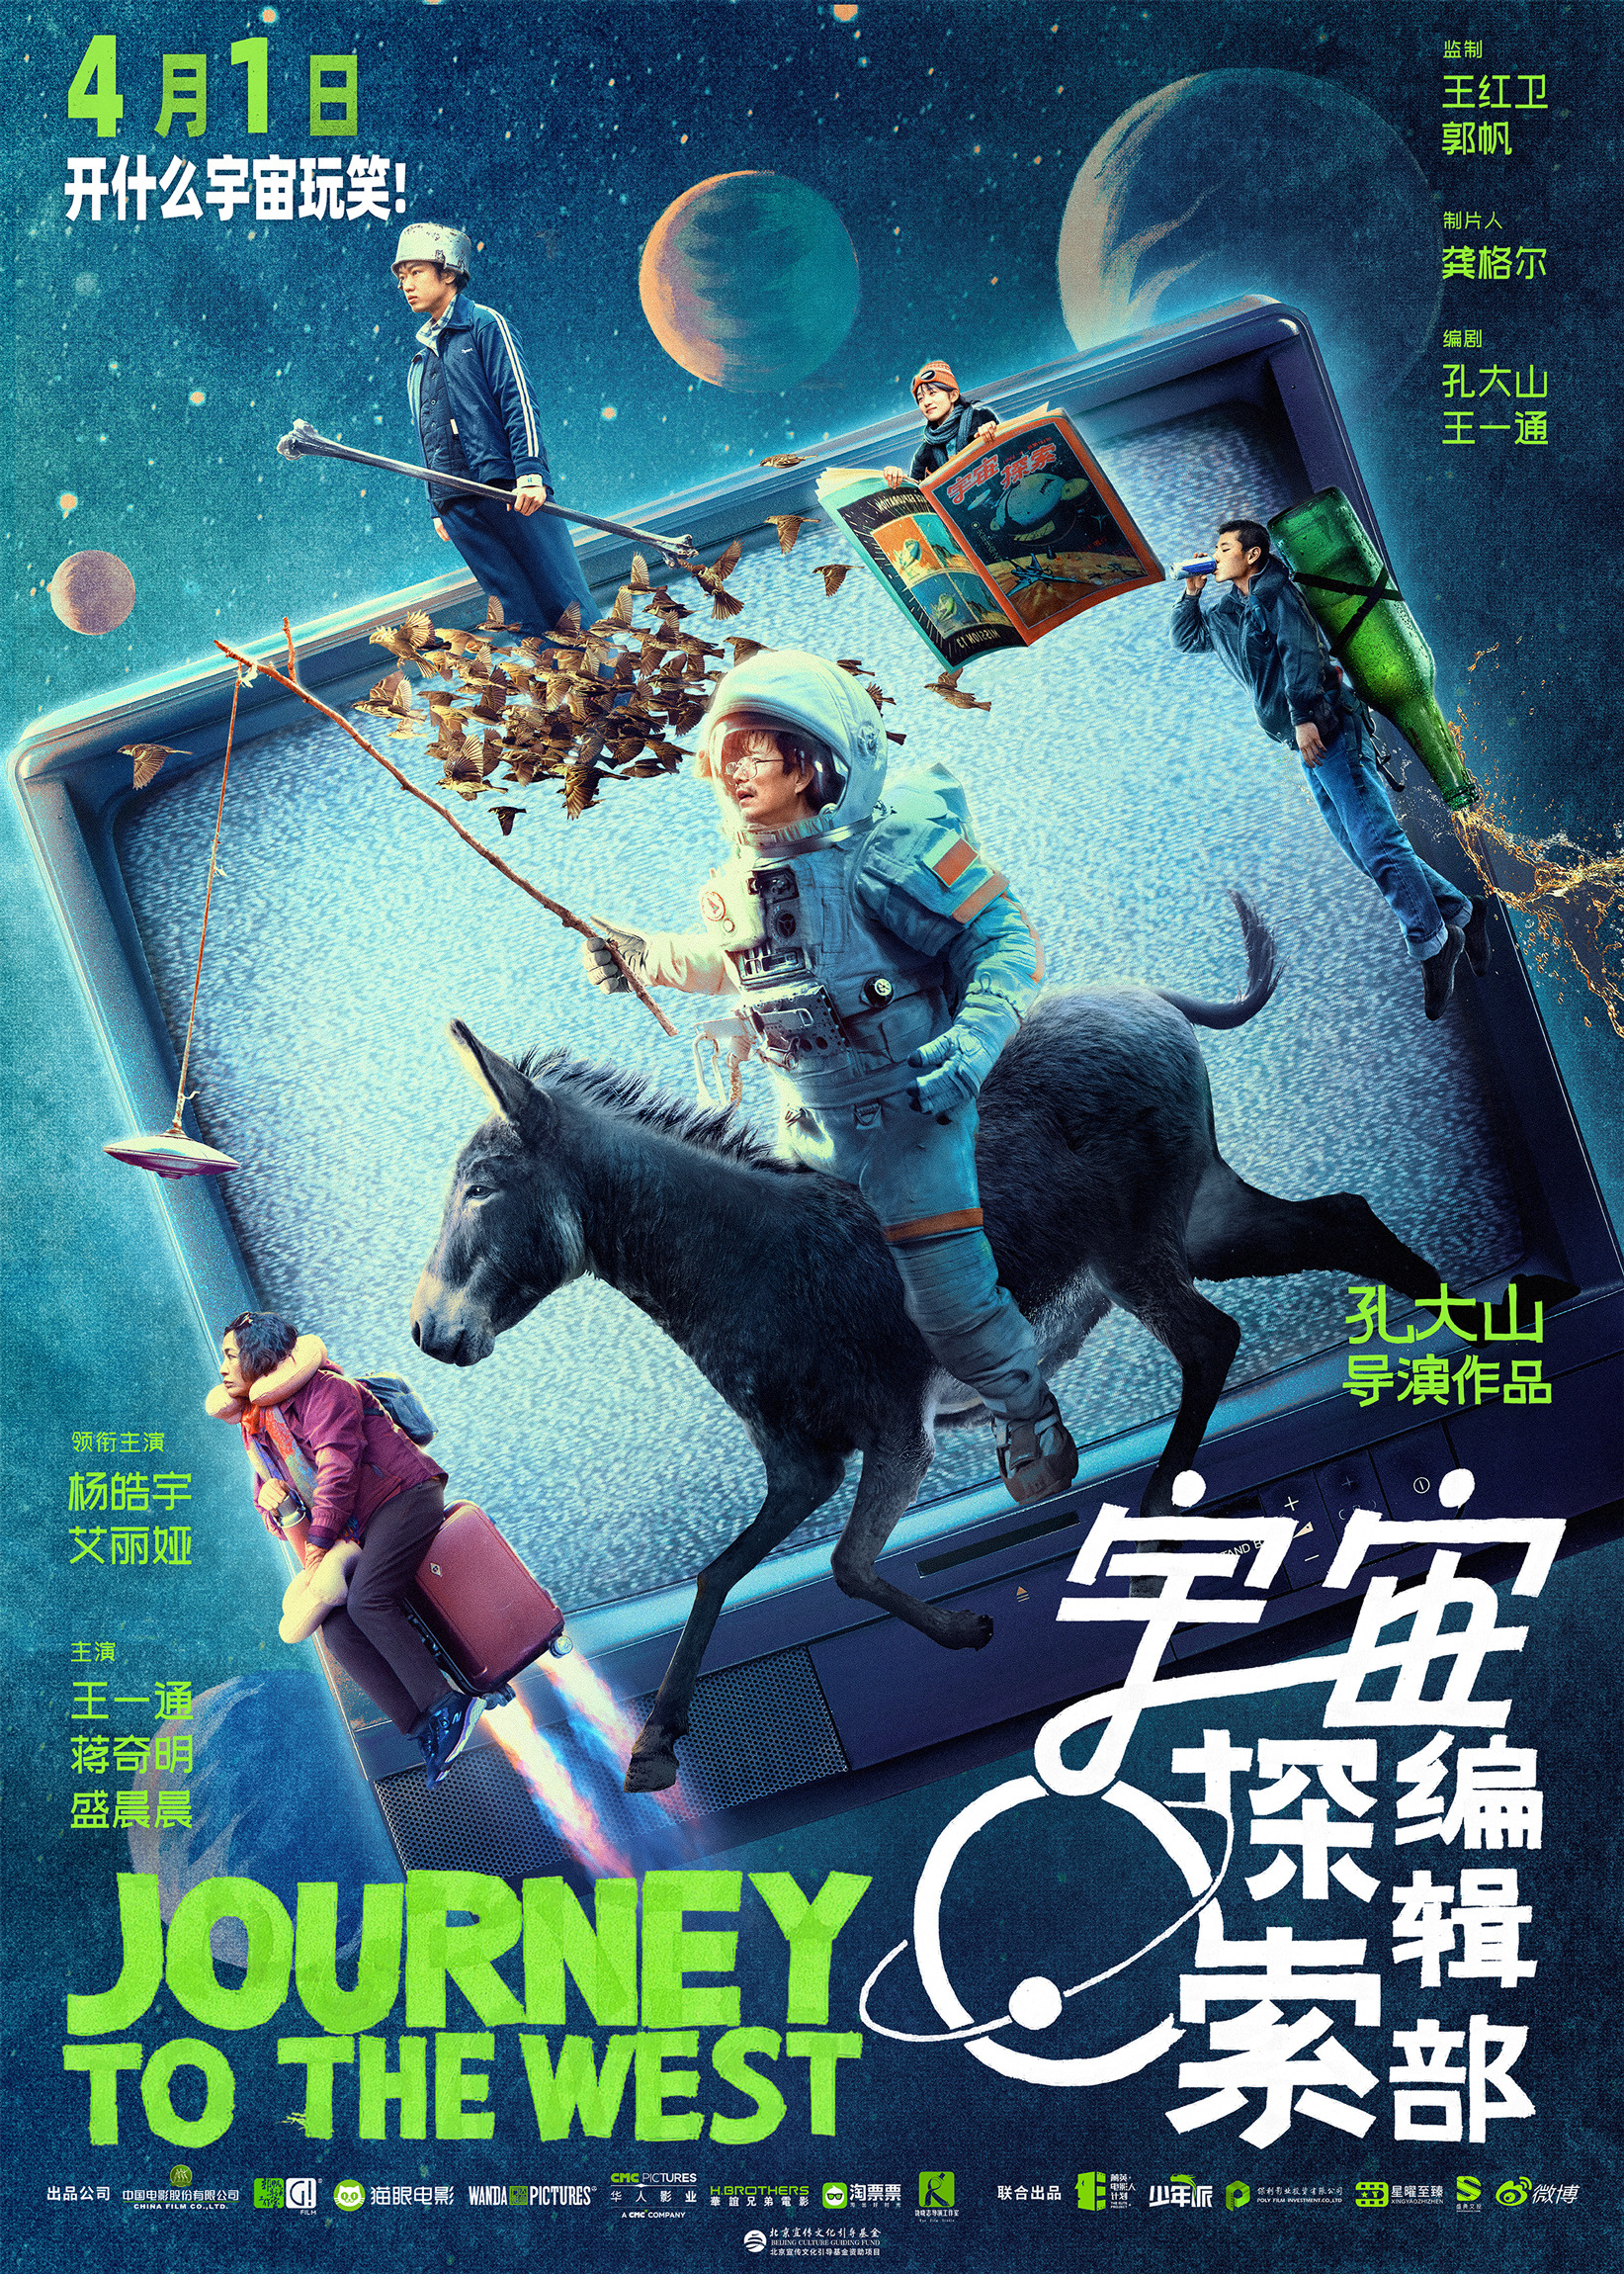 Mega Sized Movie Poster Image for Yu zhou tan suo bian ji bu (#1 of 2)